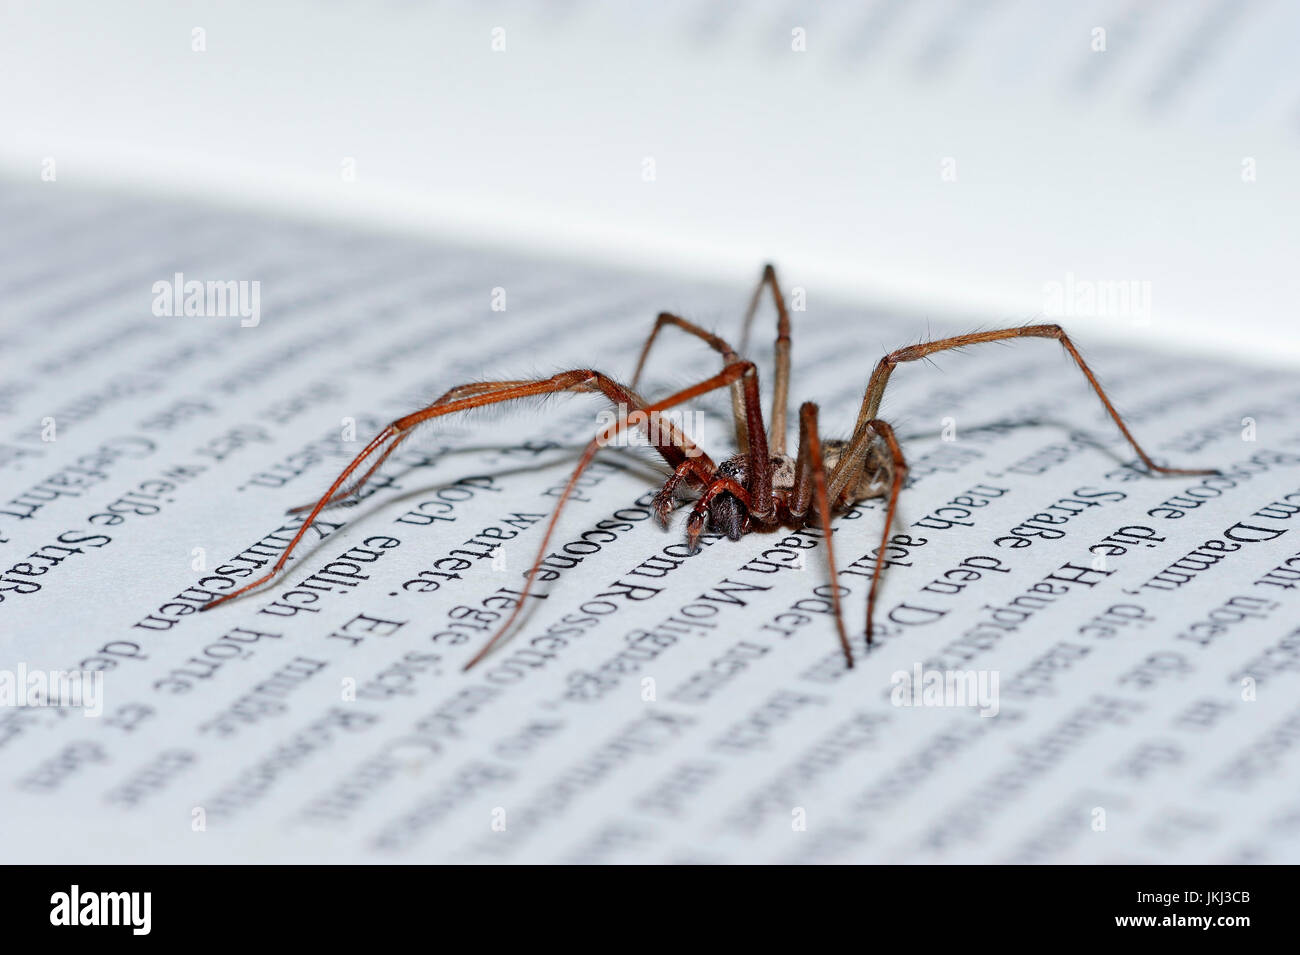 House Spider on book, North Rhine-Westphalia, Germany / (Tegenaria atrica) | Hausspinne auf Buch, Nordrhein-Westfalen, Deutschland Stock Photo